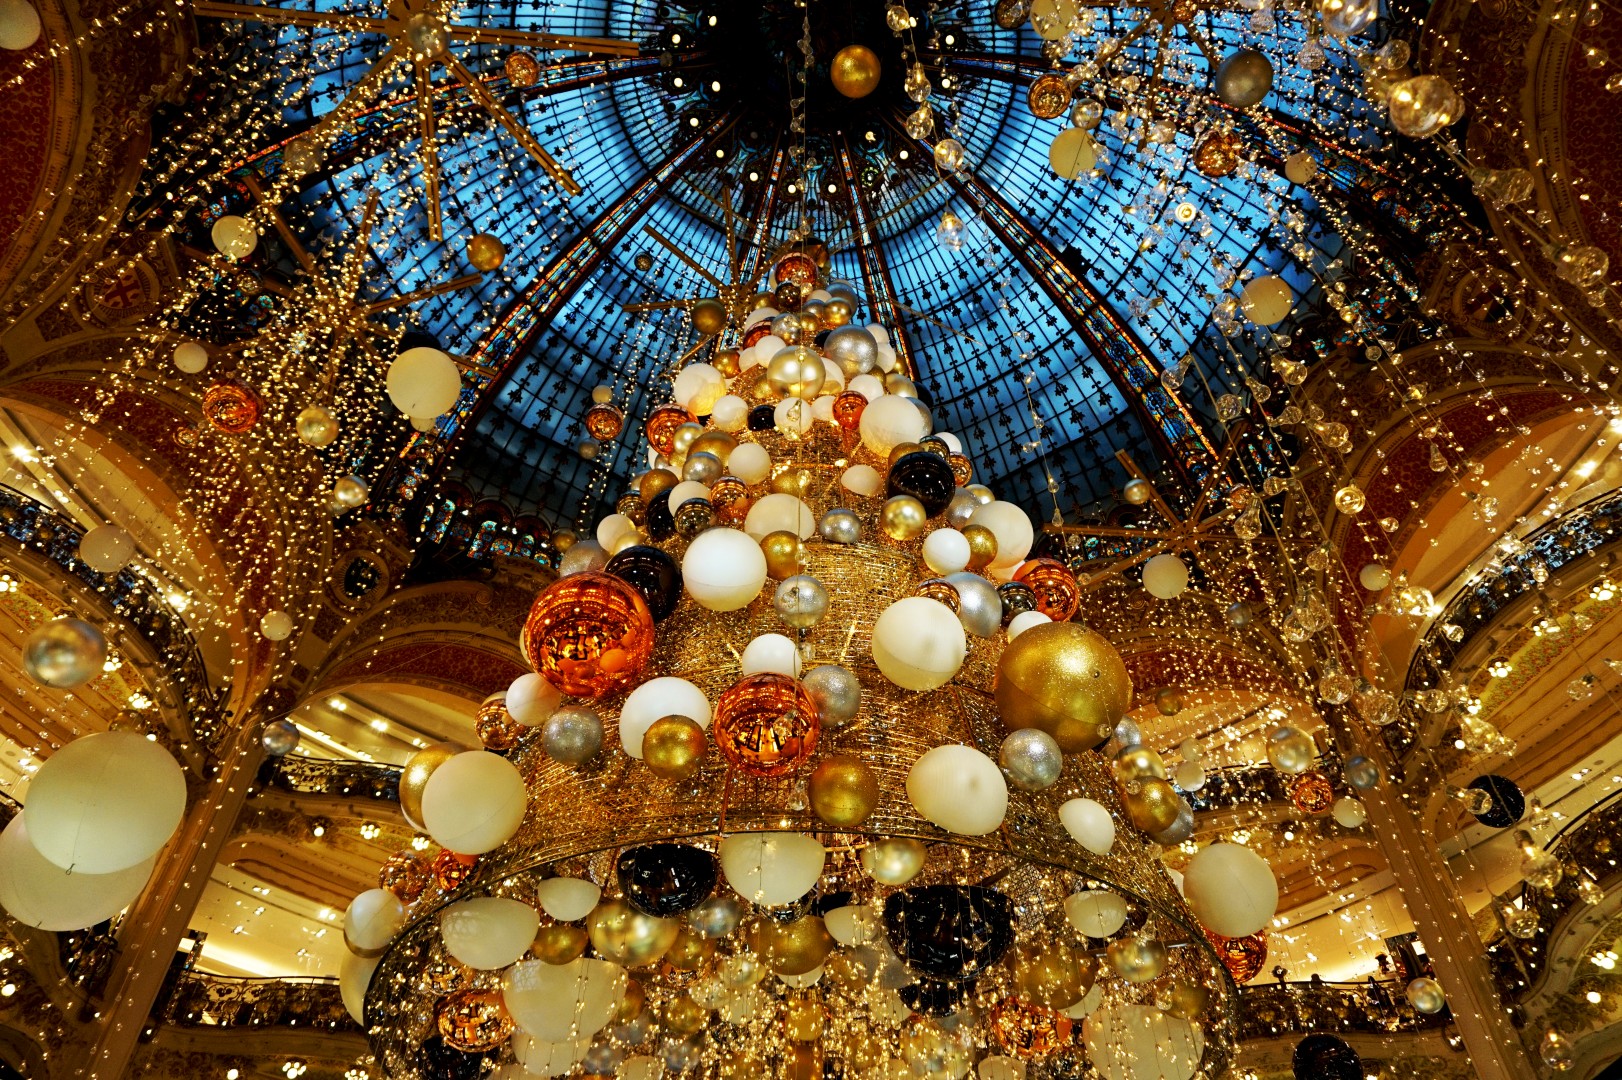 Noël à Paris - Sapin des Galeries Lafayette 2015